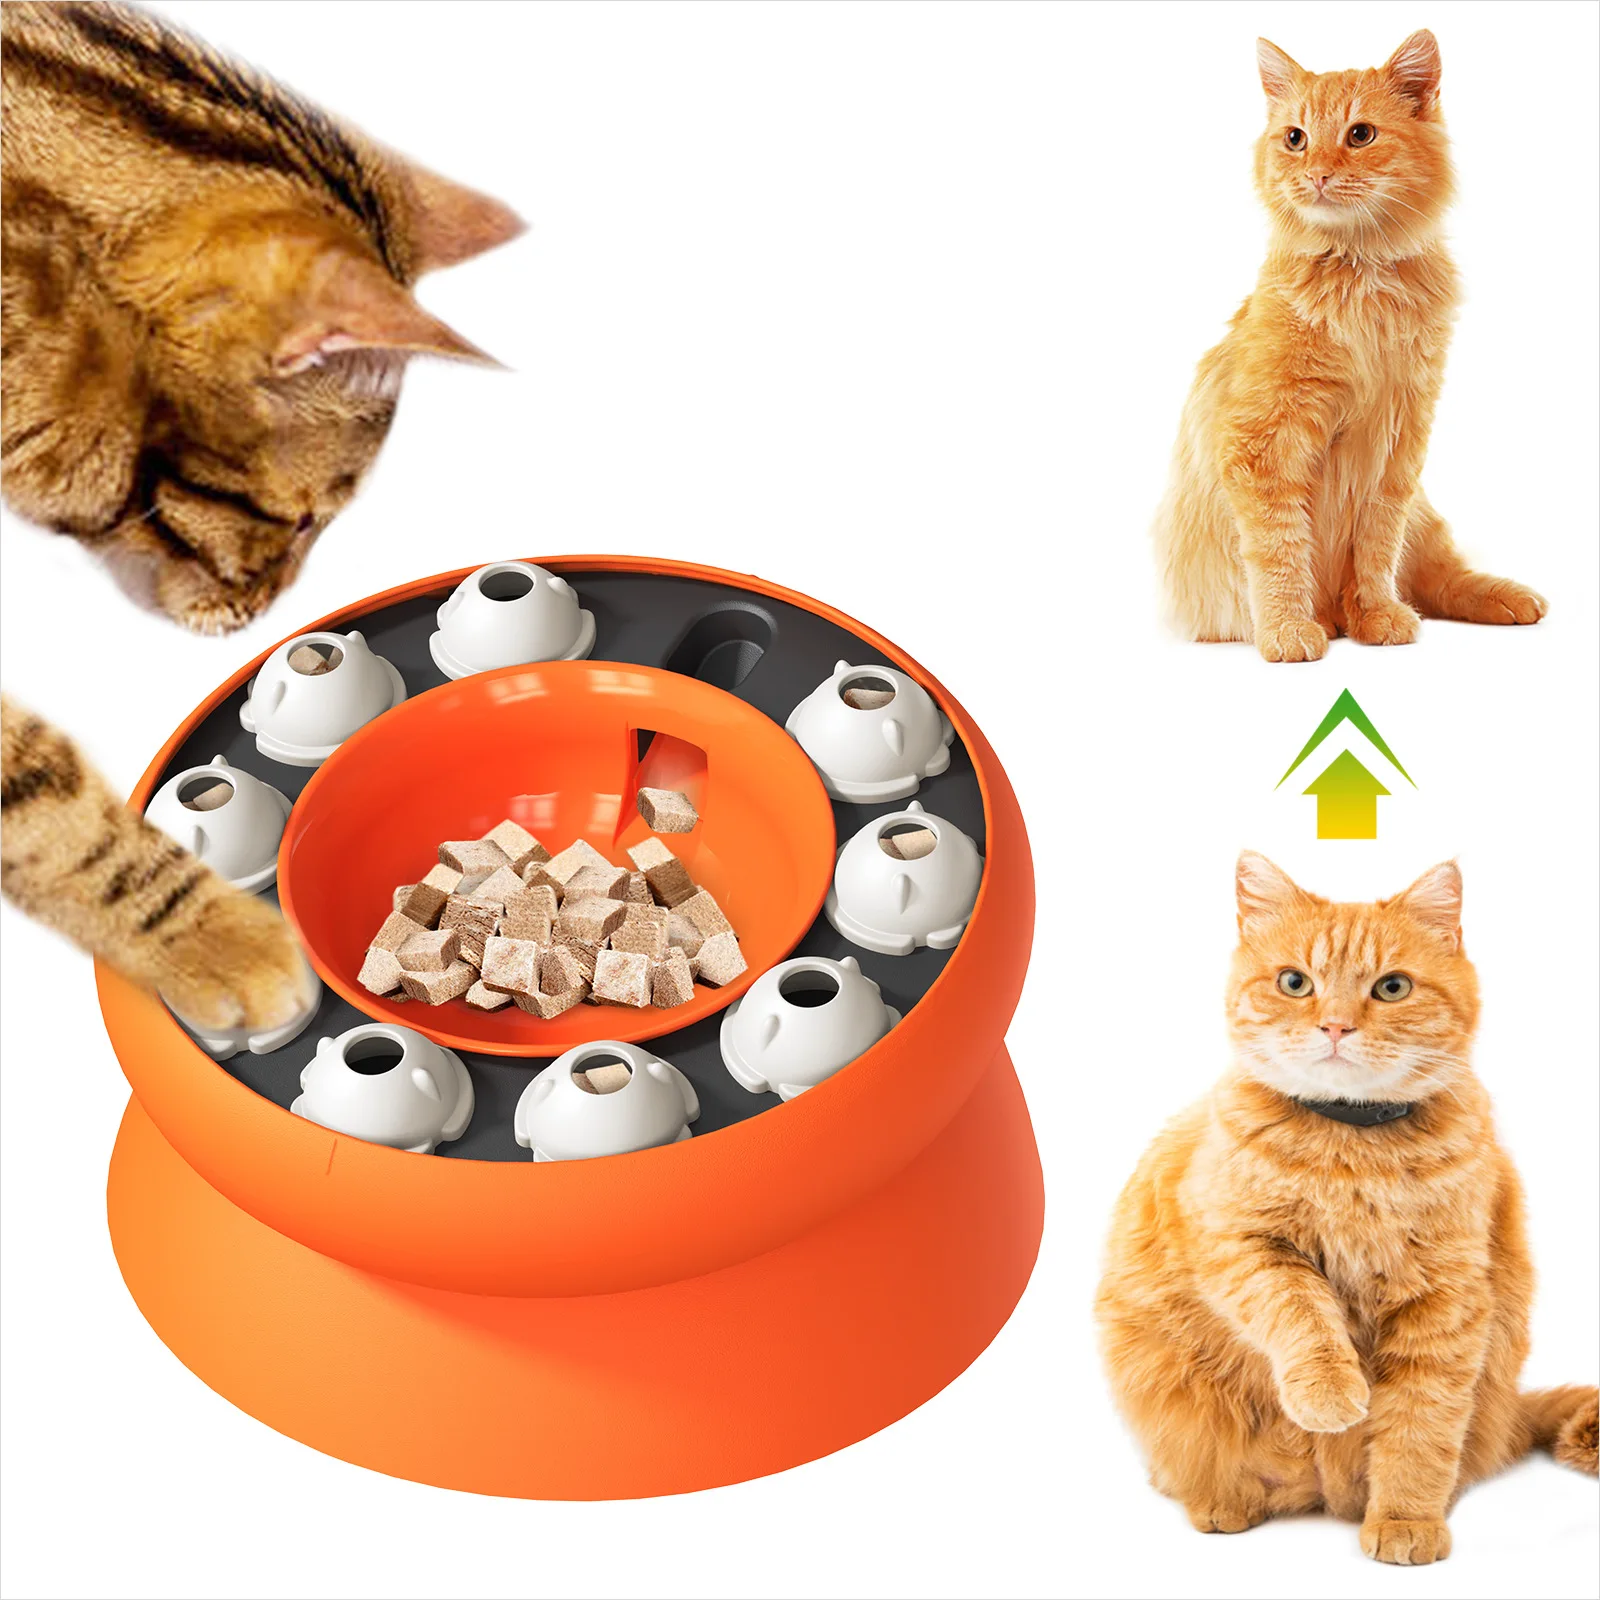 

Игрушка-пазл для собак и миска для медленной кормушки интерактивный увеличивающий рост щенок IQ вращающаяся игрушка для дозирования еды игрушки для домашних животных кошек собак тренировочная игра